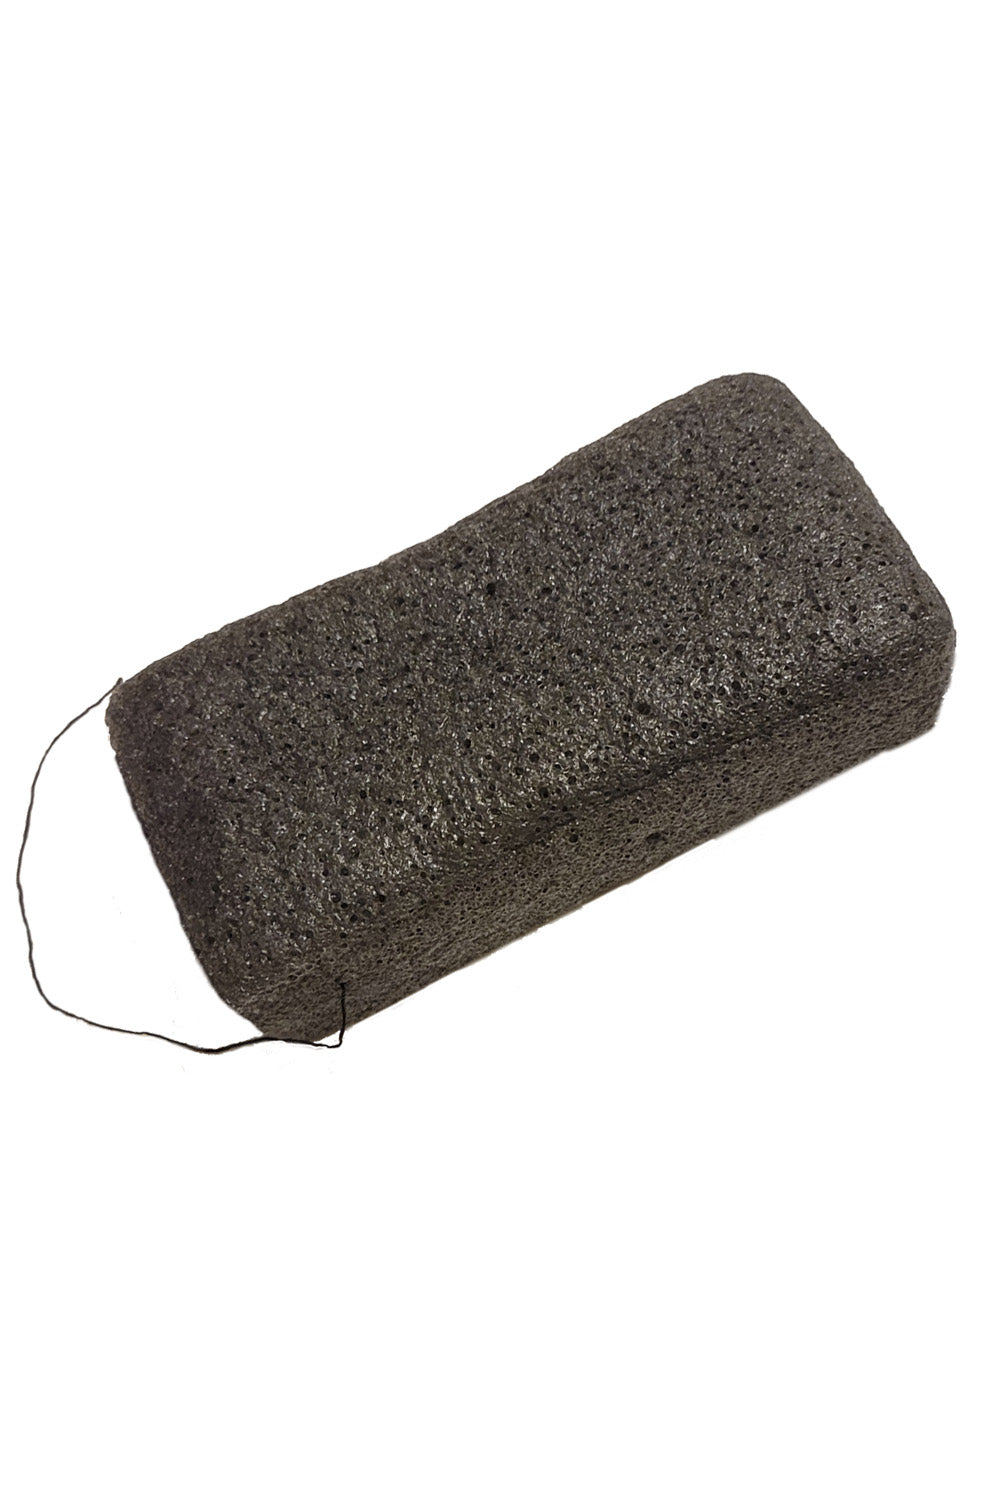 Charcoal Konjac Sponge